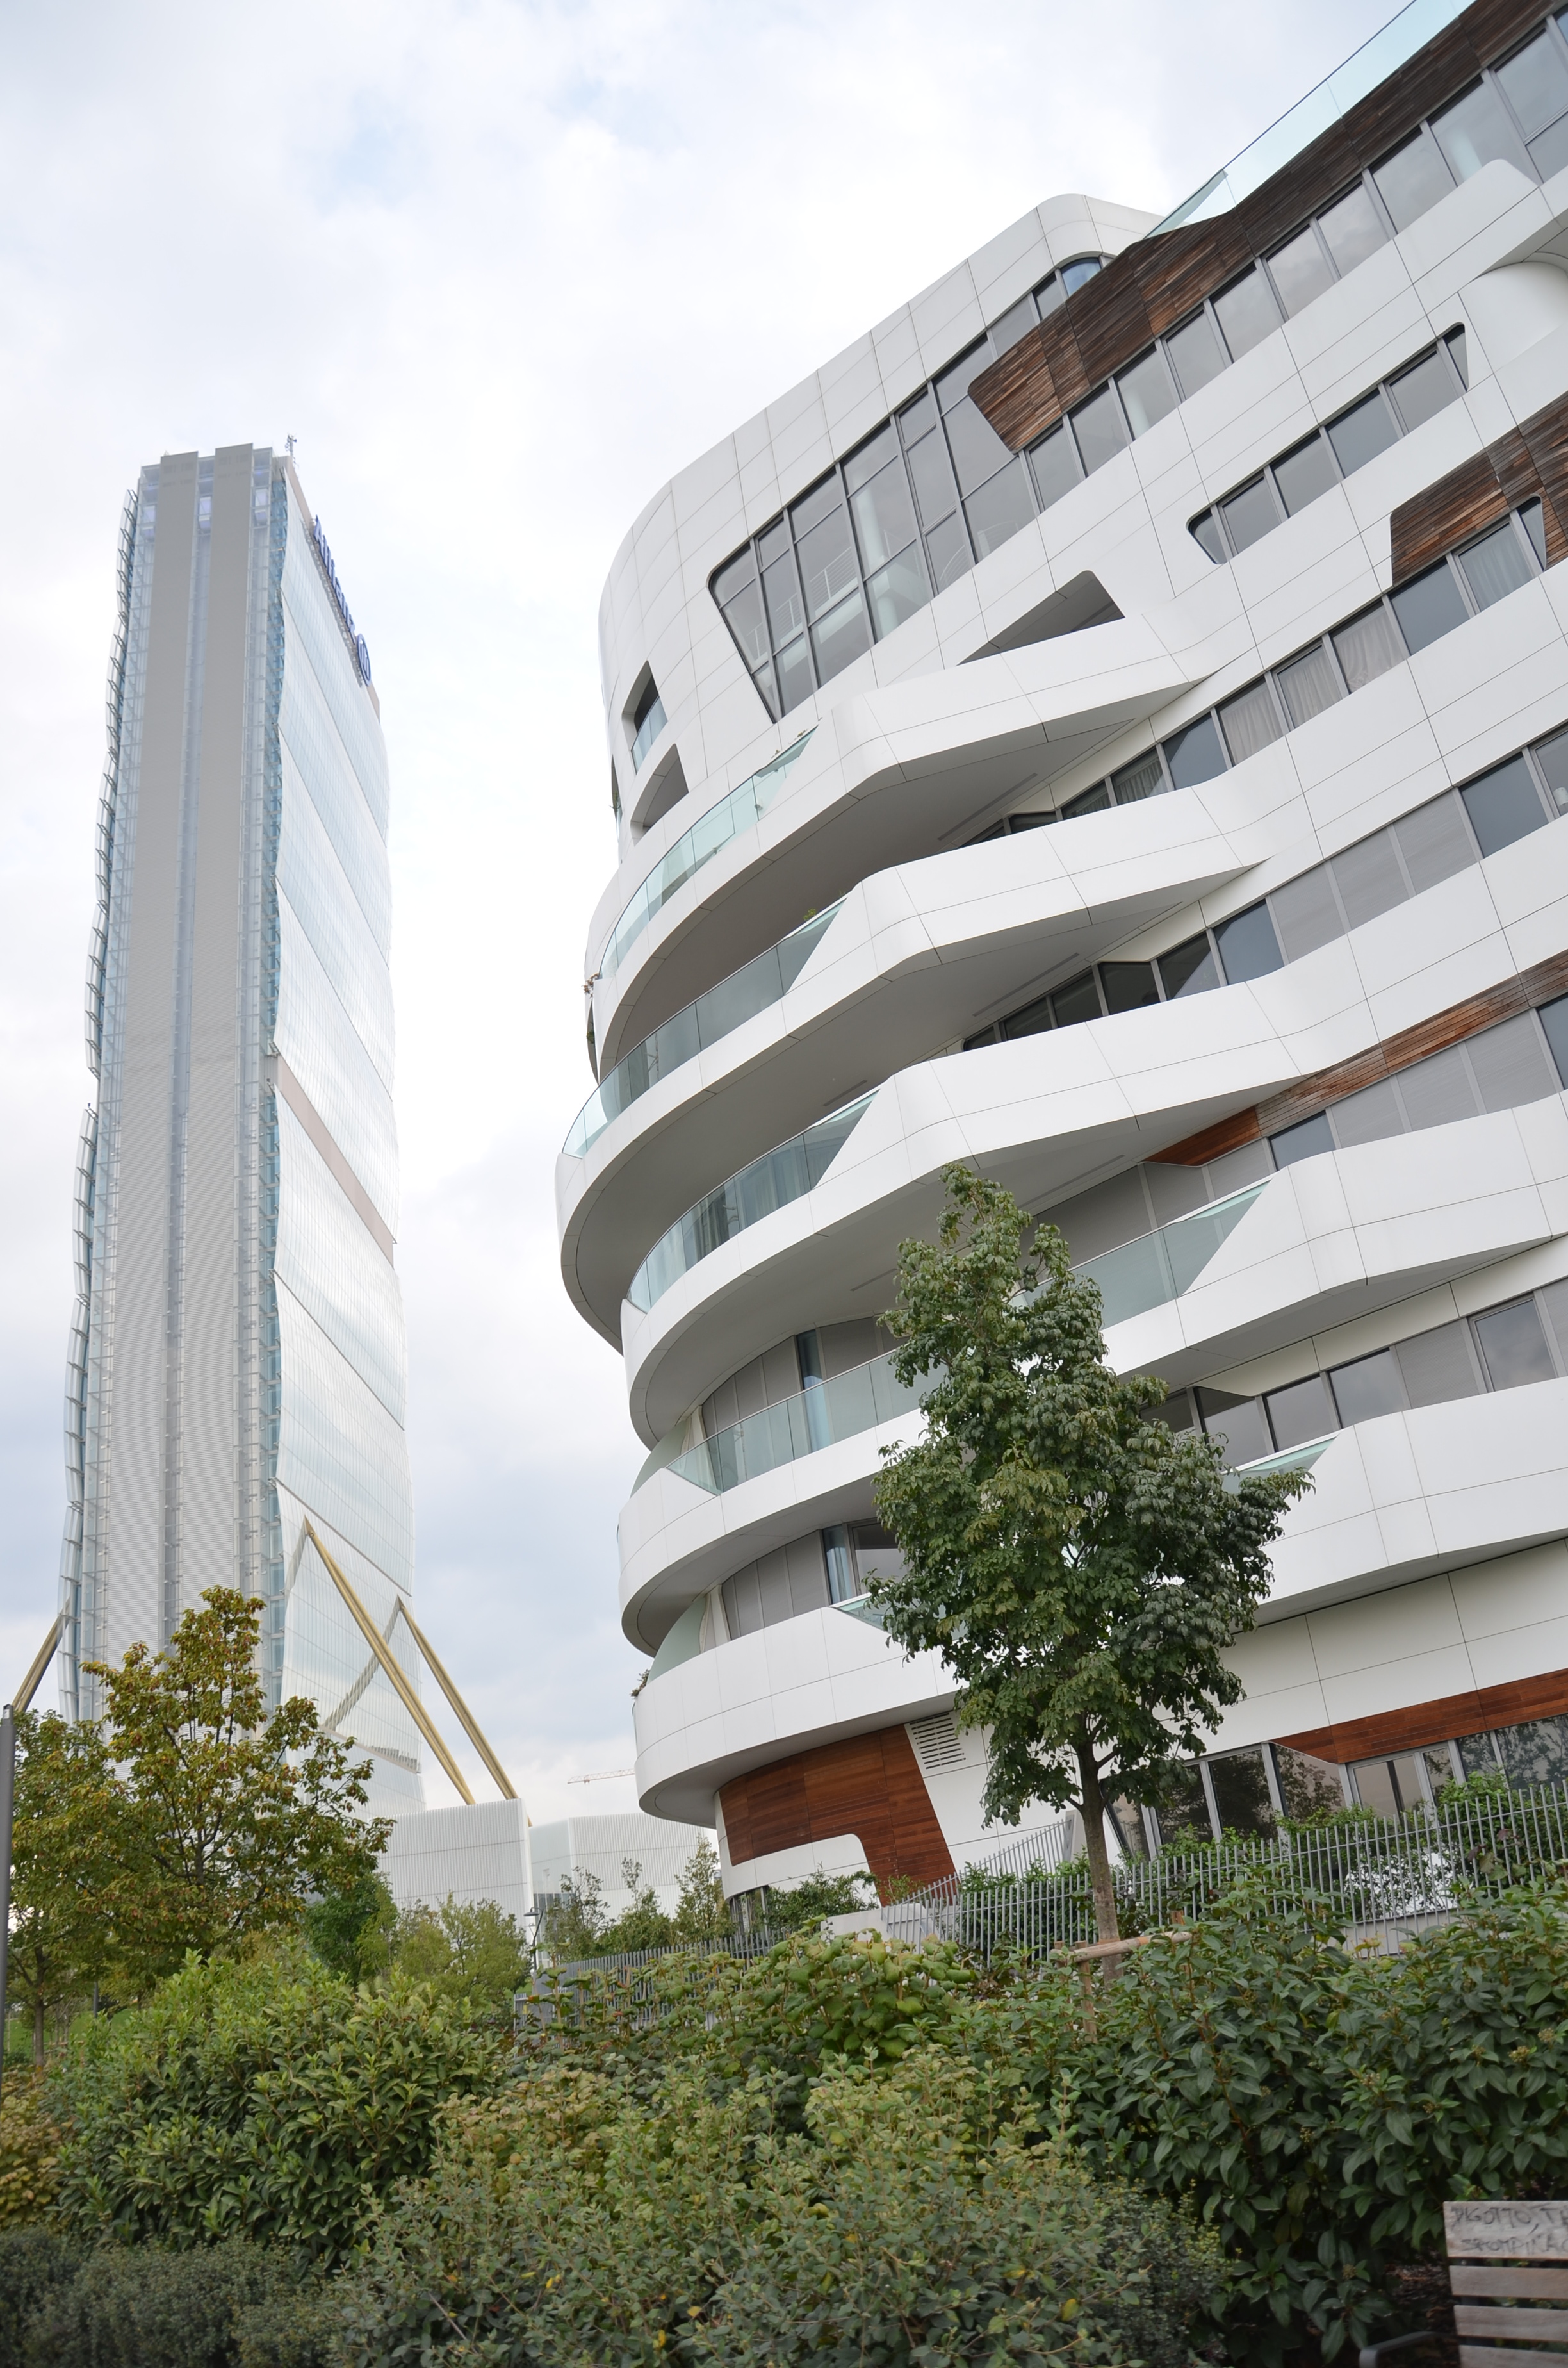 Susedstvo obytného súboru Zahy Hadid s 50-poschodovou „administratívou“ Arata Isozakiho v milánskej štvrti City Life.